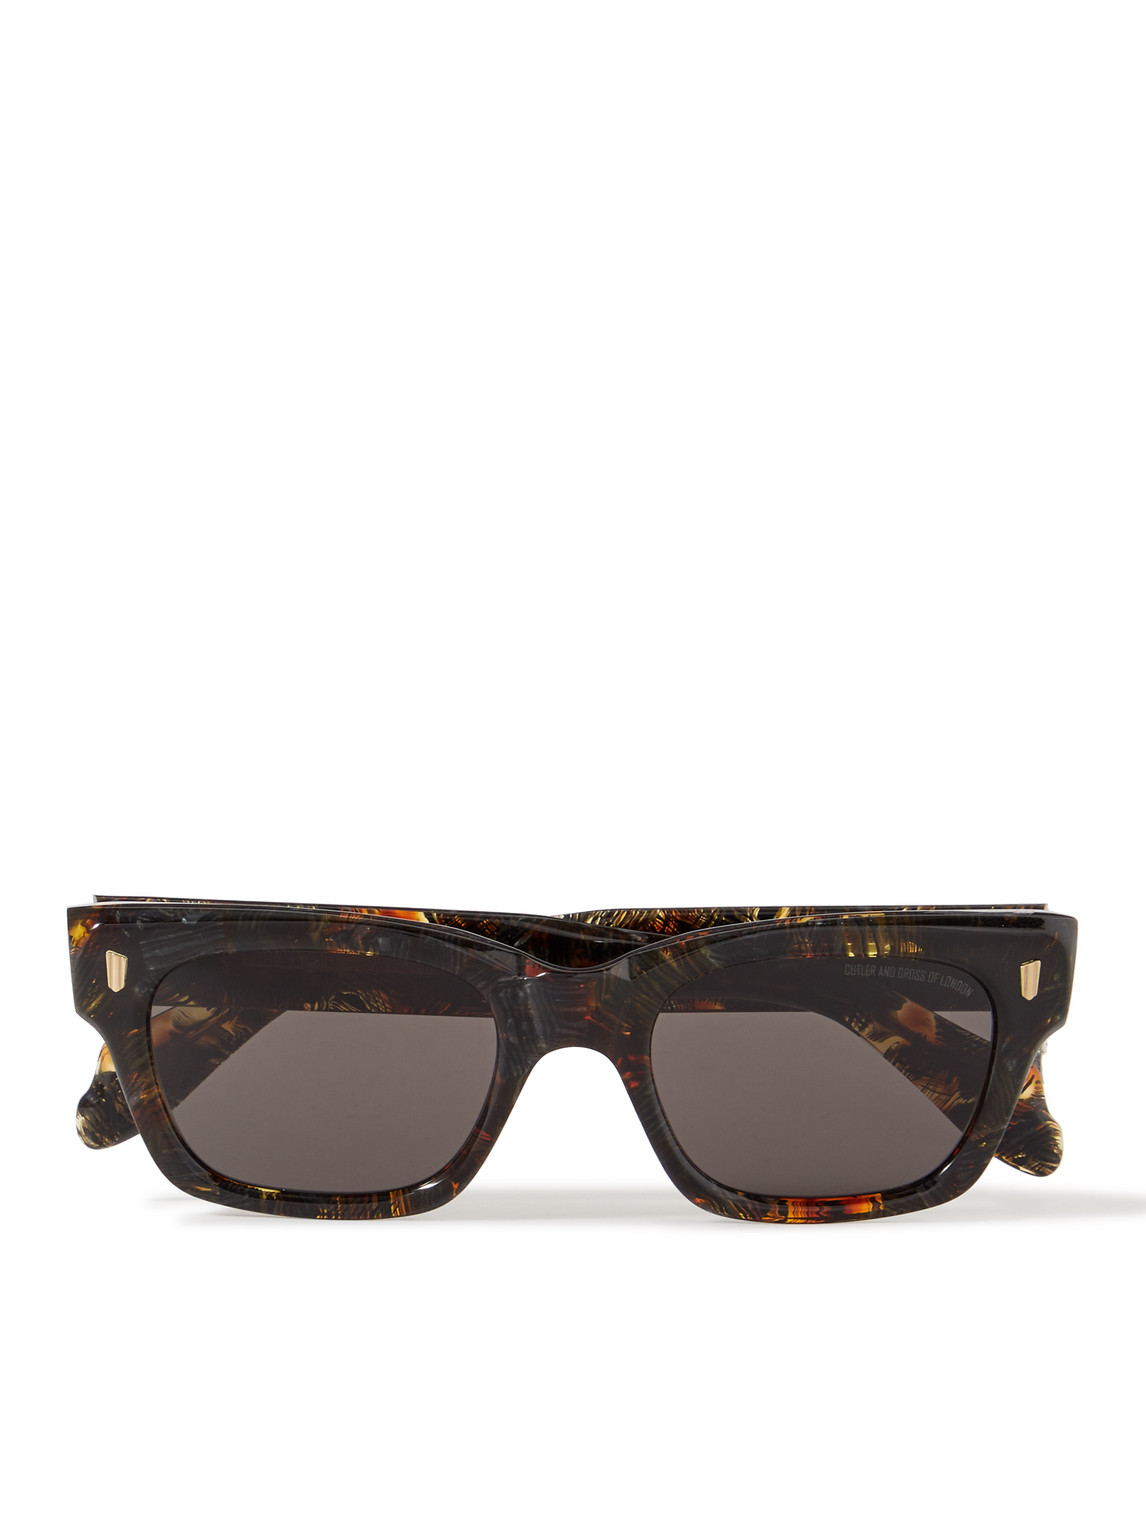 Cutler And Gross 1391 Square-frame Tortoiseshell Acetate Sunglasses In Black